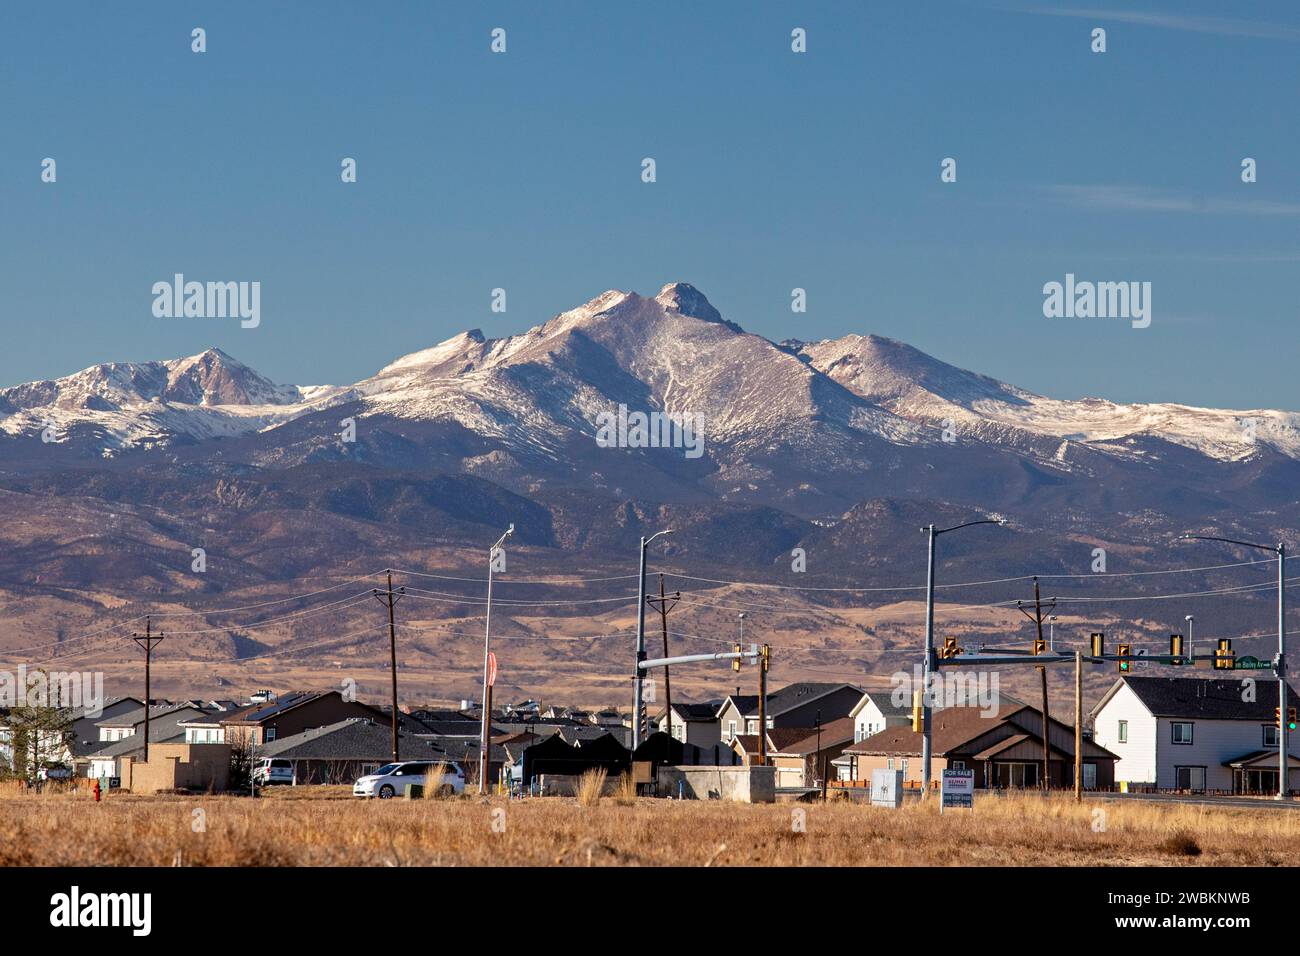 Frederick, Colorado - Mount Meeker et longs Peak dans le parc national des montagnes Rocheuses, photographiés depuis les plaines orientales du Colorado au nord de Denver. Banque D'Images